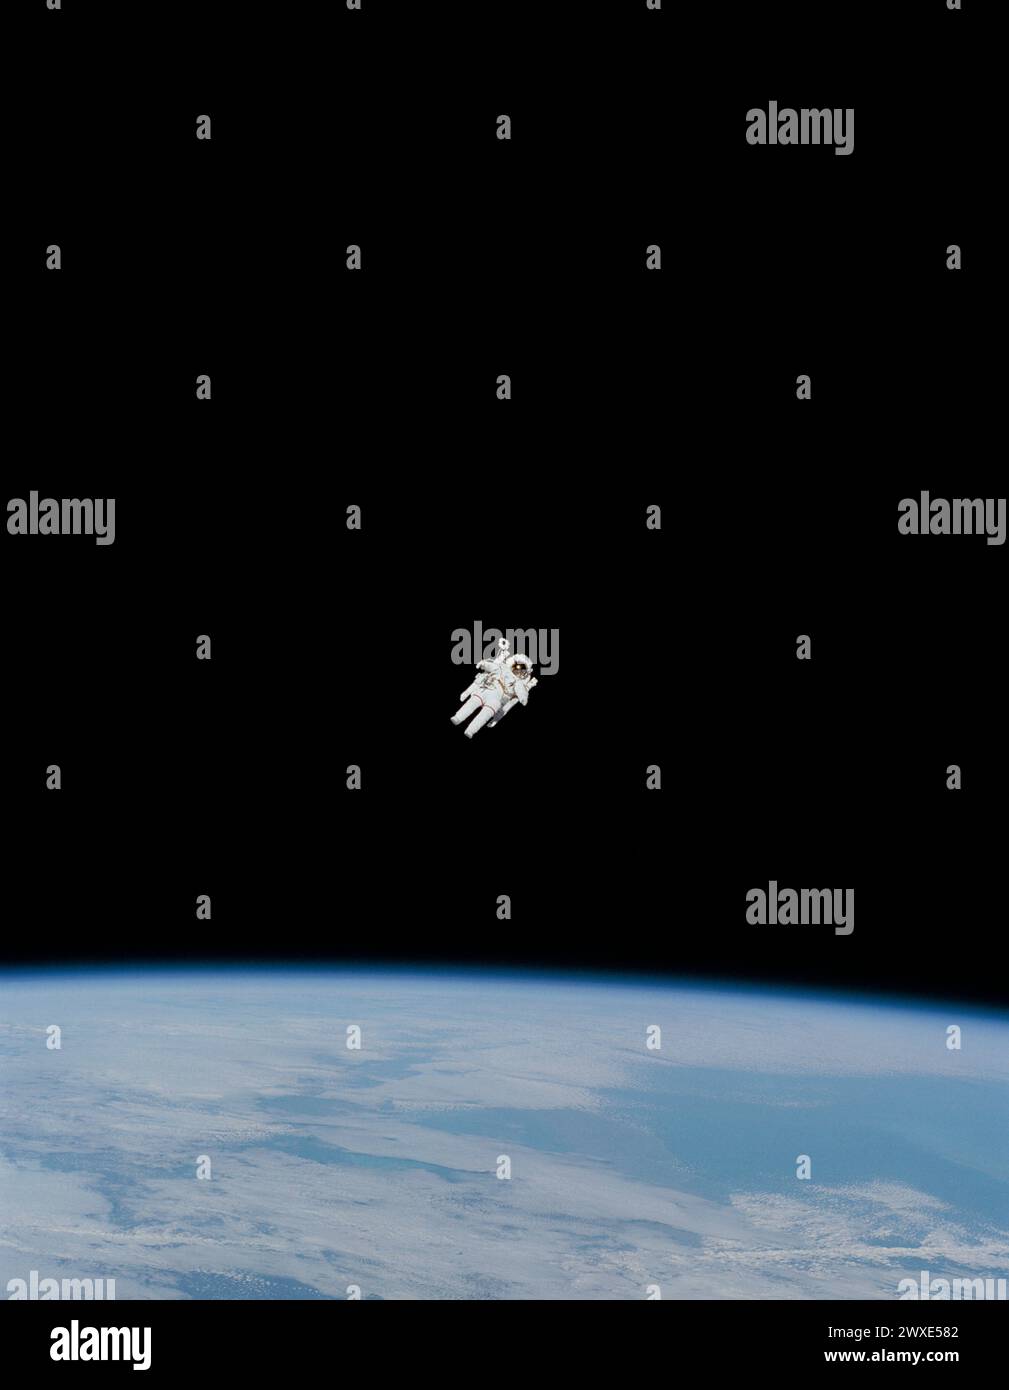 Prima passeggiata libera. L'astronauta Bruce McCandless II si avvicina alla sua distanza massima dallo Space Shuttle Challenger orbitante sulla Terra in questa foto scattata dai suoi compagni di equipaggio a bordo.McCandless è nel bel mezzo della prima prova "sul campo" del dispositivo a zaino azionato a mano e ad azoto chiamato Manned Maneuvering Unit (MMU). 7 febbraio 1984 una versione ottimizzata e migliorata di un'immagine originale della NASA / credito obbligatorio: NASA Foto Stock